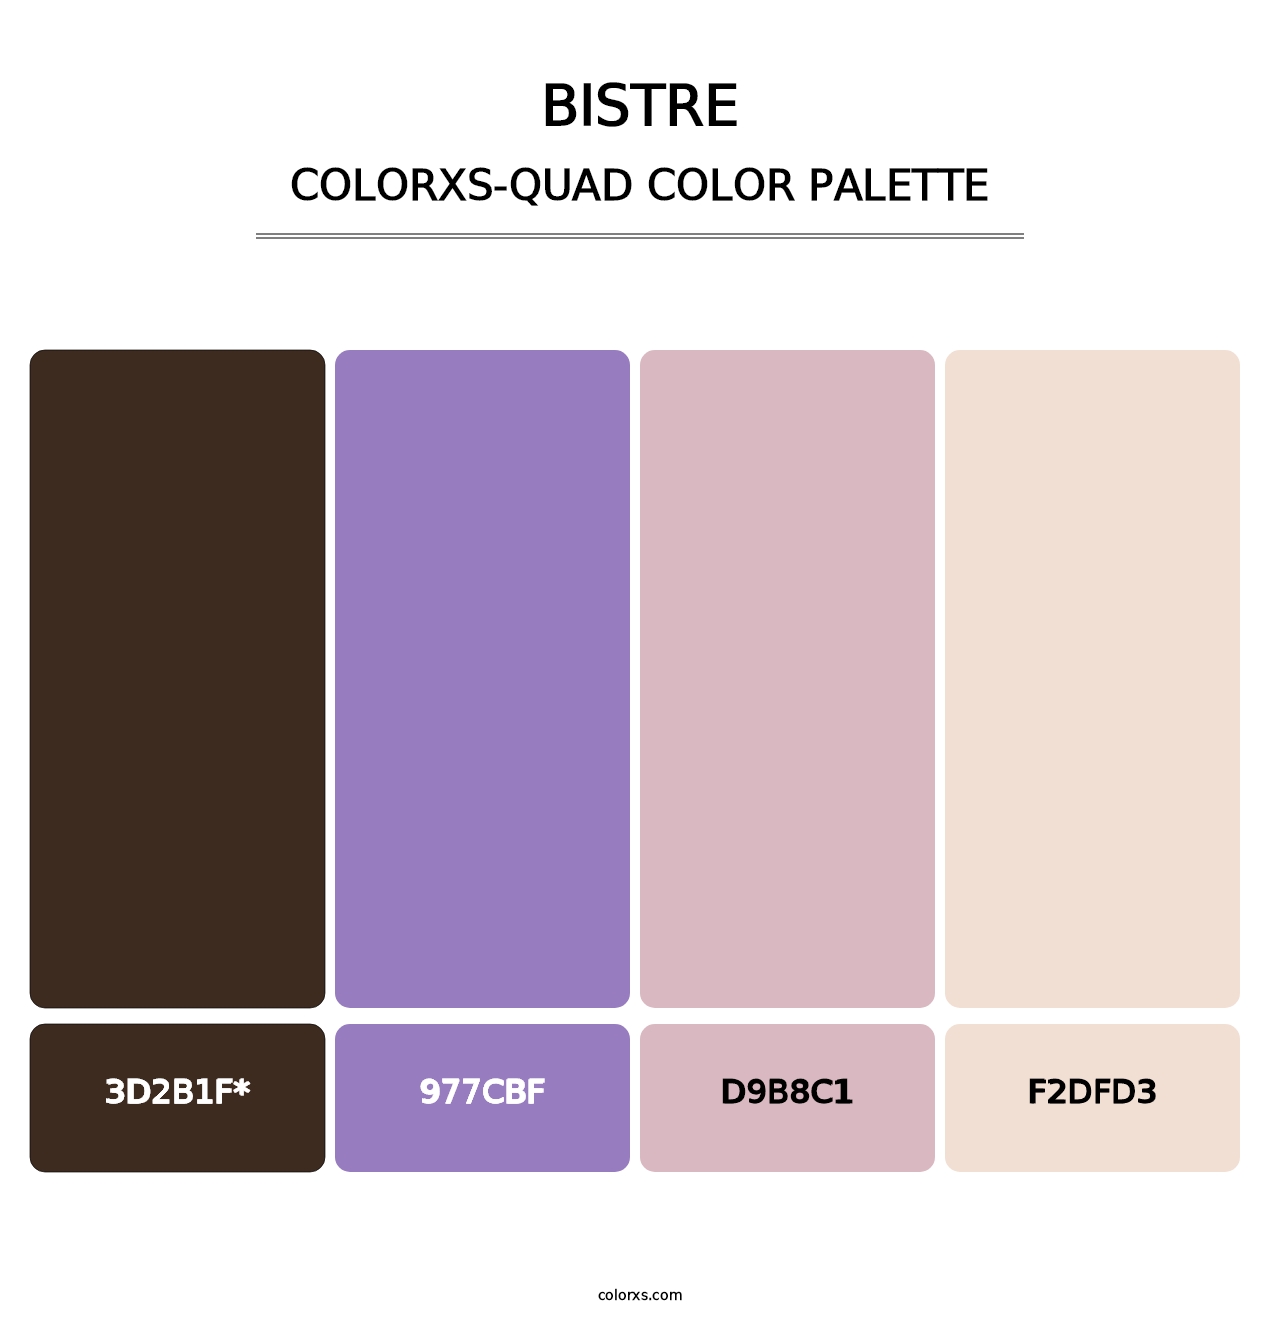 Bistre - Colorxs Quad Palette